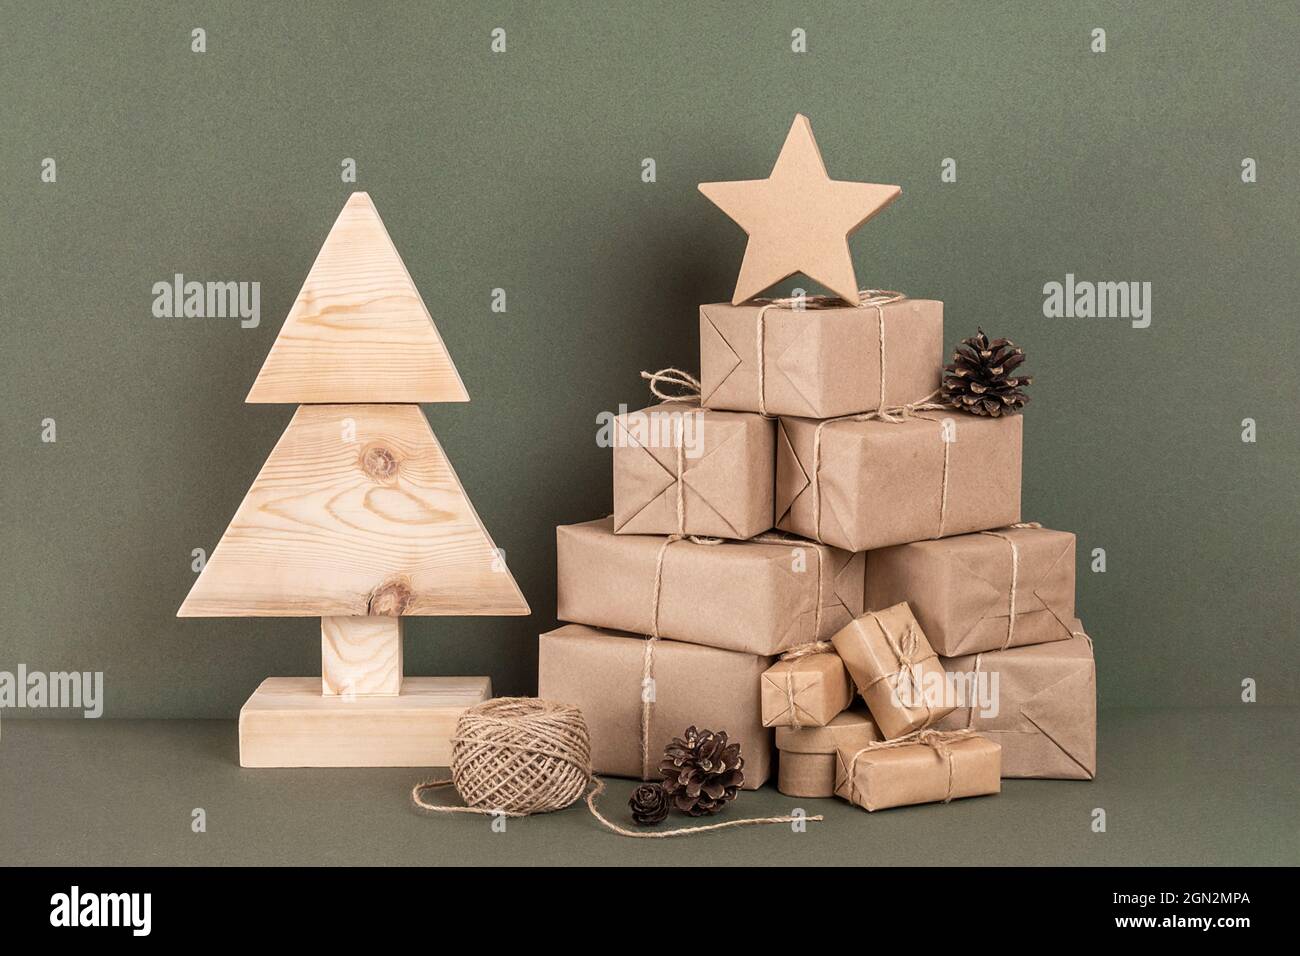 Komposition zu Weihnachten oder Neujahr. Hausgemachter Weihnachtsbaum aus Holz, viel Geschenk, Urlaubsdekor auf grünem Hintergrund. Konzept weihnachten Null Abfall, umweltfreundlich Stockfoto